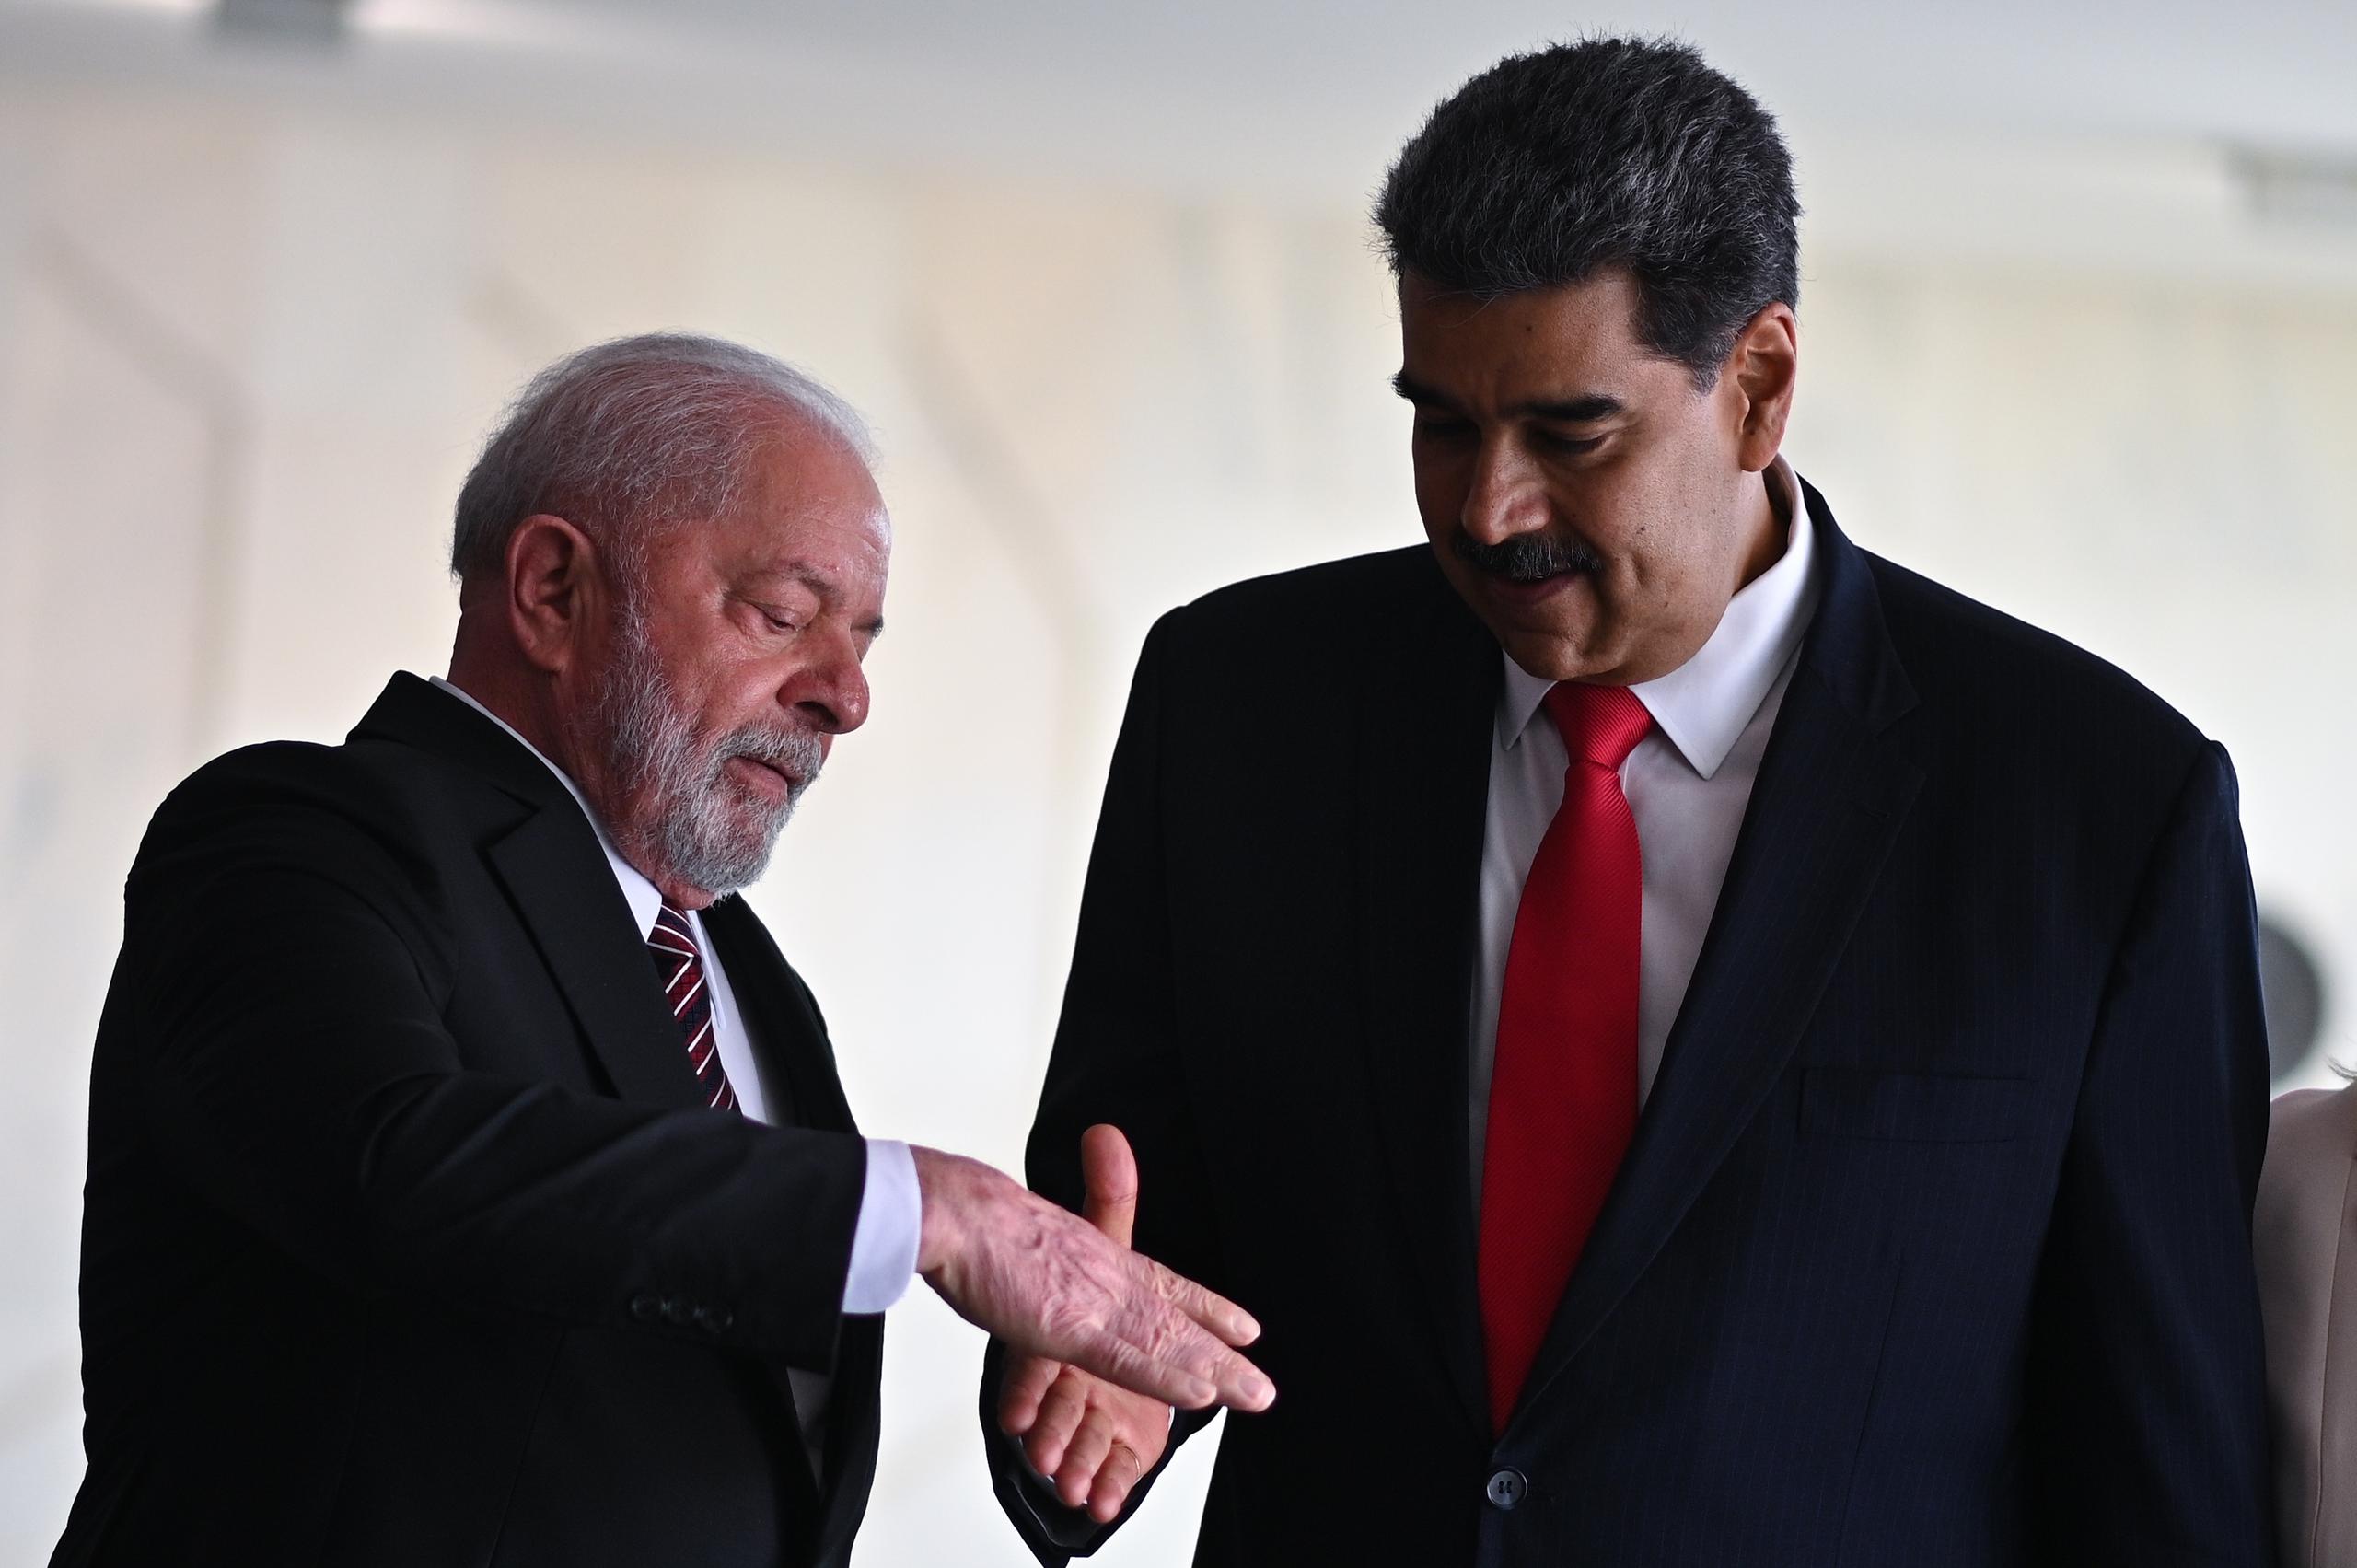 El presidente de Brasil, Luiz Inácio Lula da Silva, recibe al presidente de Venezuela, Nicolás Maduro, previo a un almuerzo en el Palacio de Itamaraty, en Brasilia, Brasil.